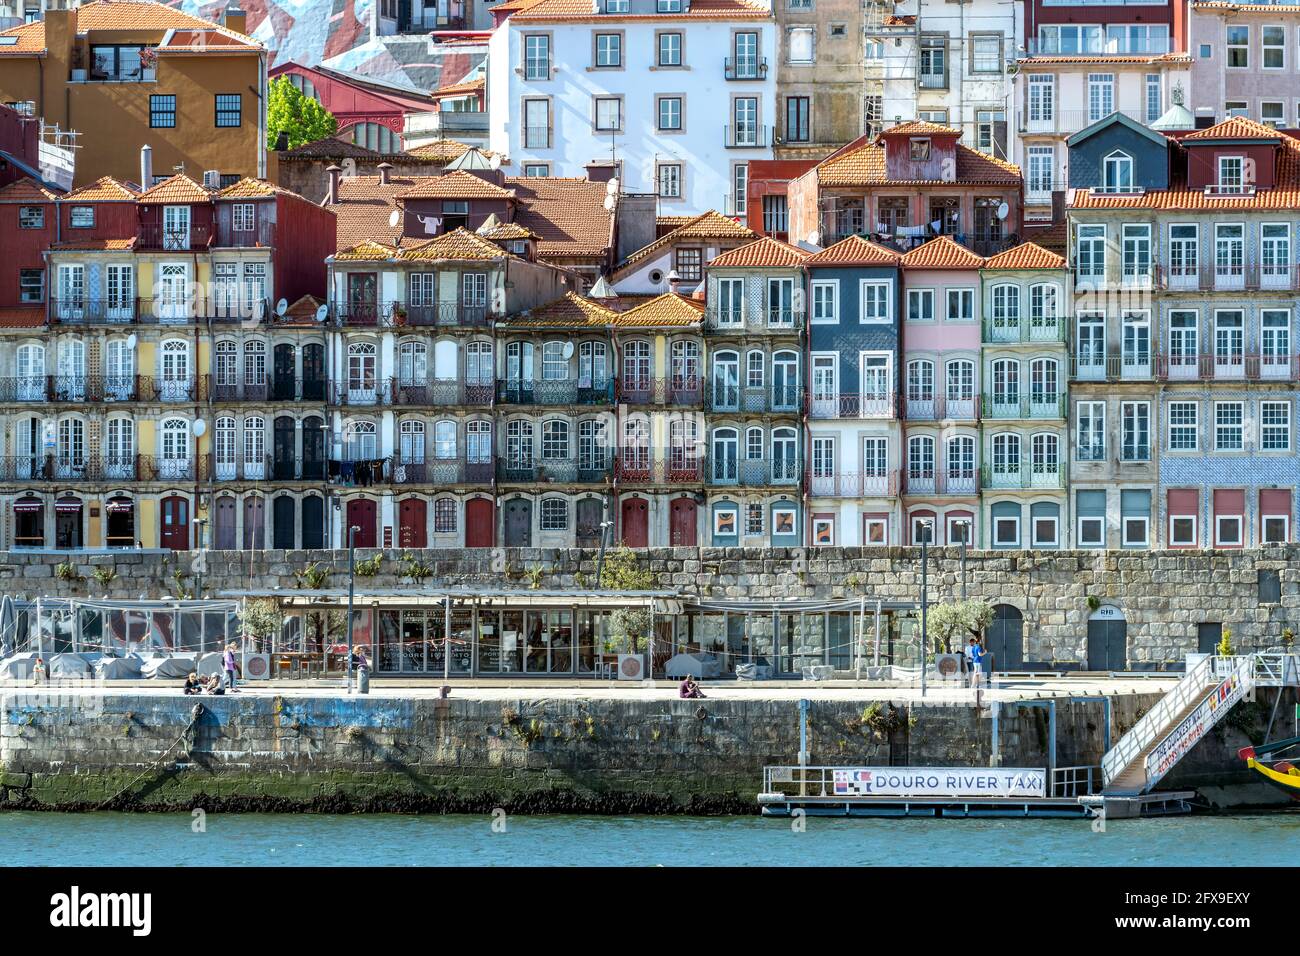 Typische Häuser an der Douro Promenade Cais de Ribeira in der Altstadt von Porto, Portugal, Europa   |  Typical buildings at the  Cais de Ribeira Dour Stock Photo